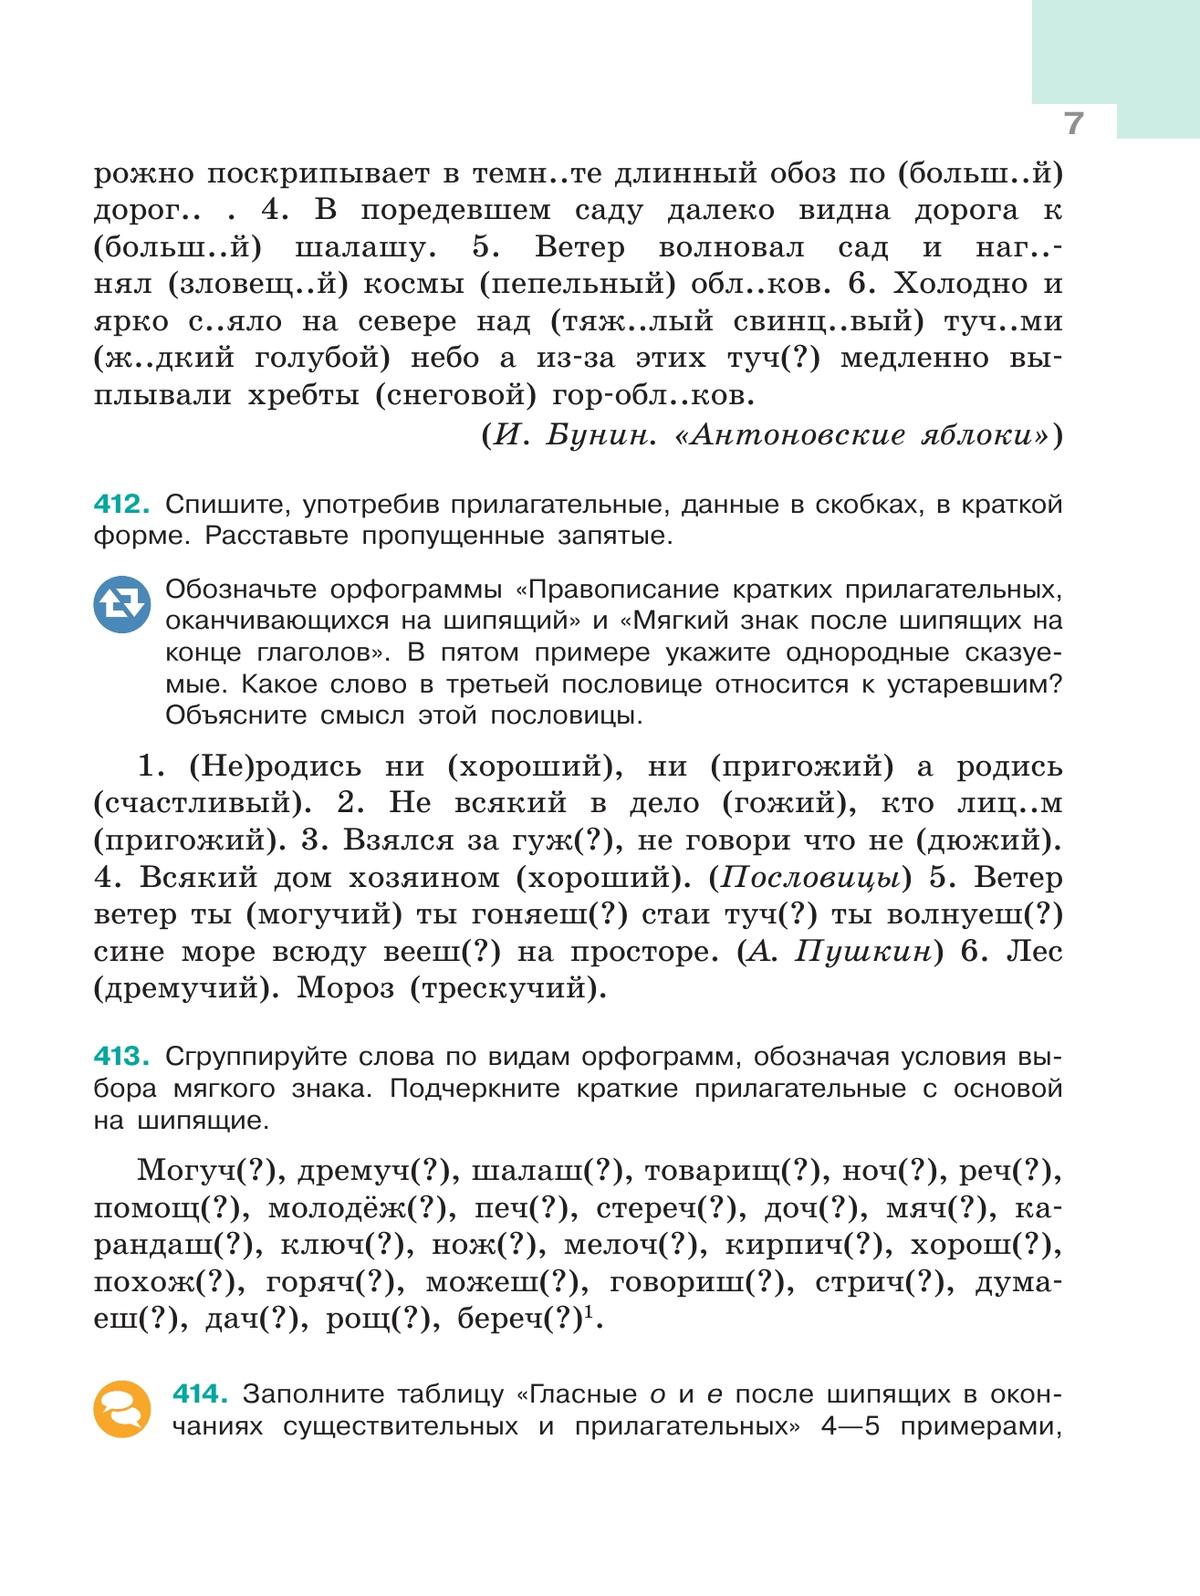 Русский язык. 6 класс. В 2 ч. Ч. 2 7